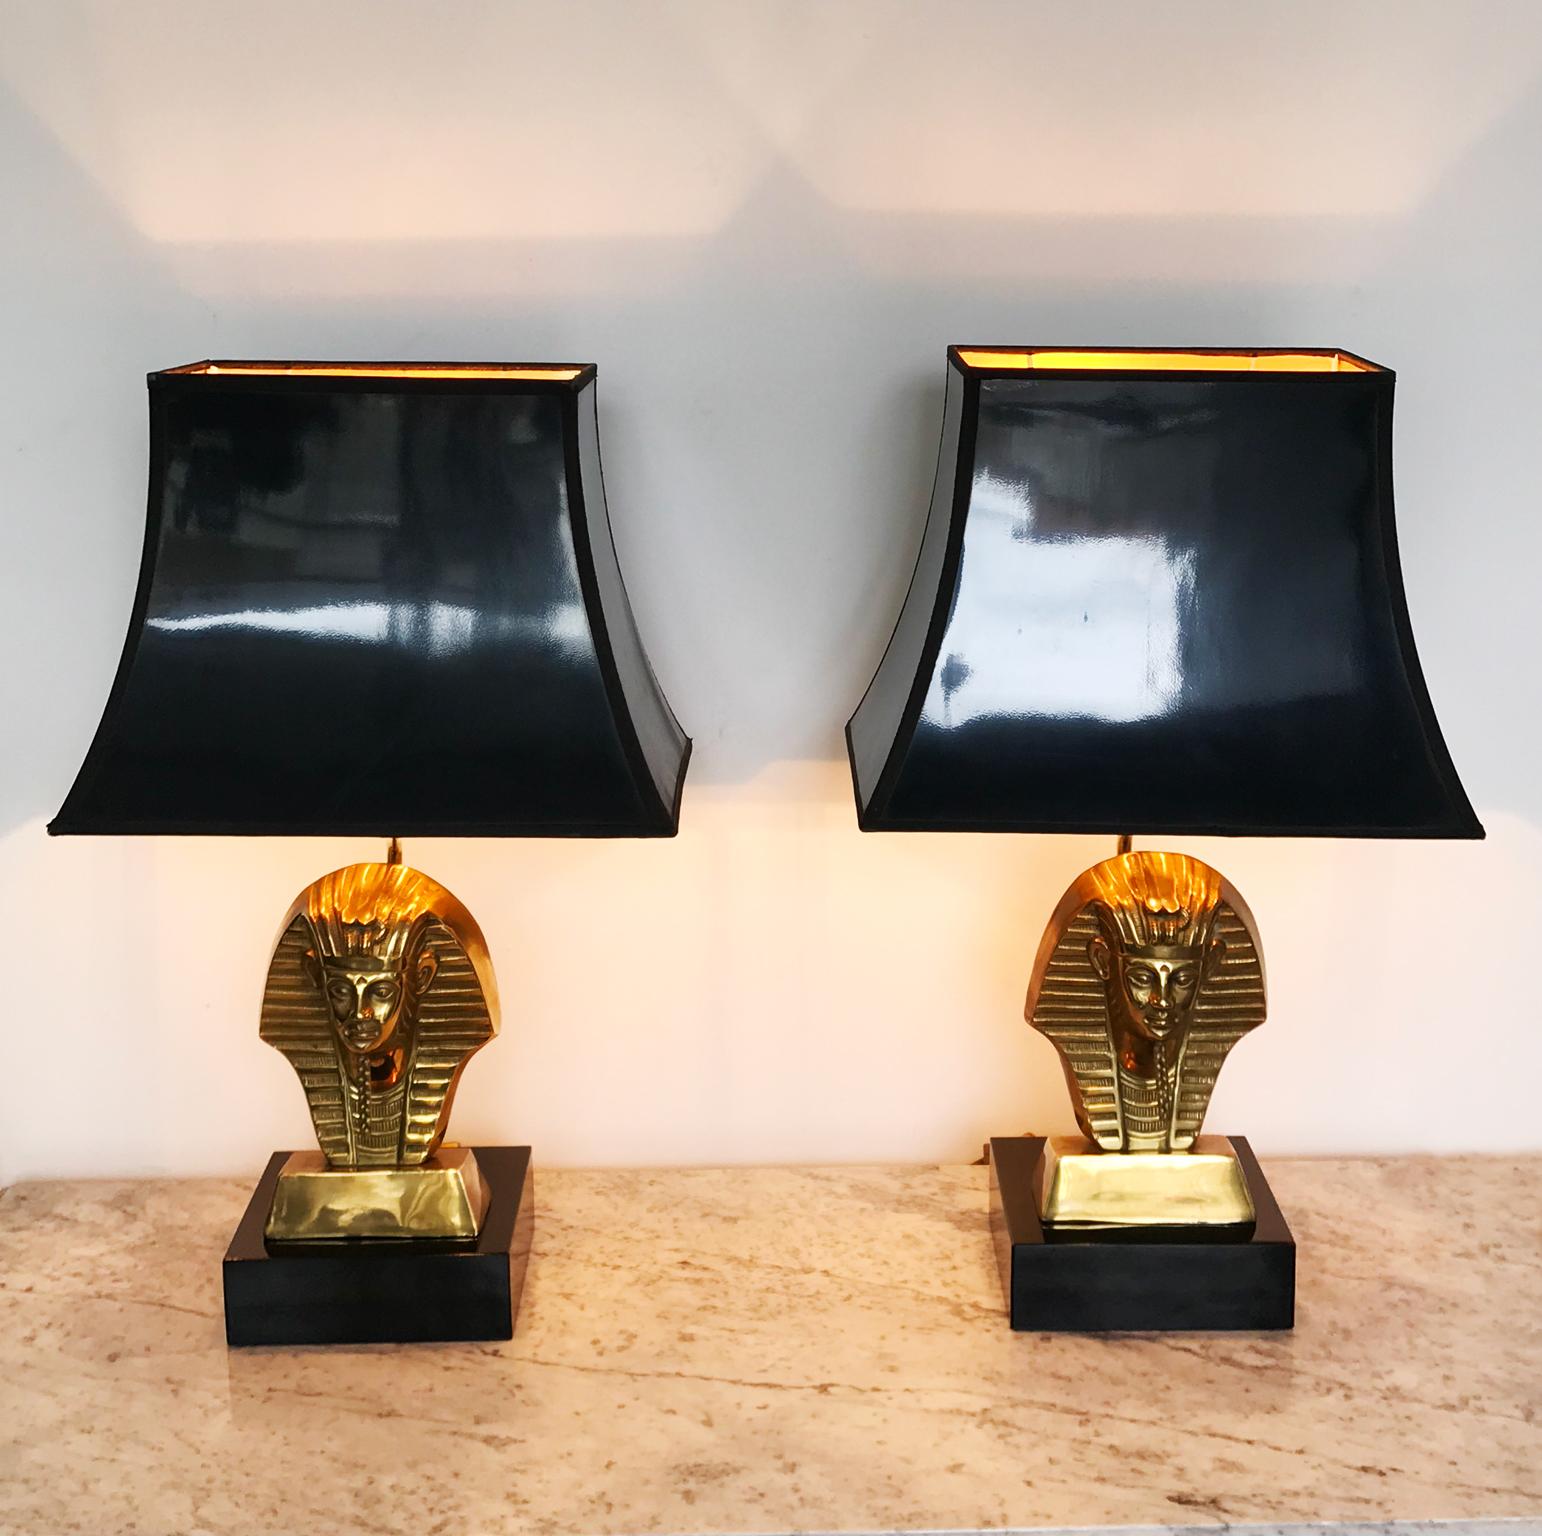 Paire de lampes de table Pharaoh King de style Deknudt, Hollywood Regency, vers les années 1960. Elles ont les teintes noires d'origine.

Hauteur, abat-jour compris : 58 cm
Hauteur sans abat-jour : 38cm
Largeur, abat-jour compris : 35